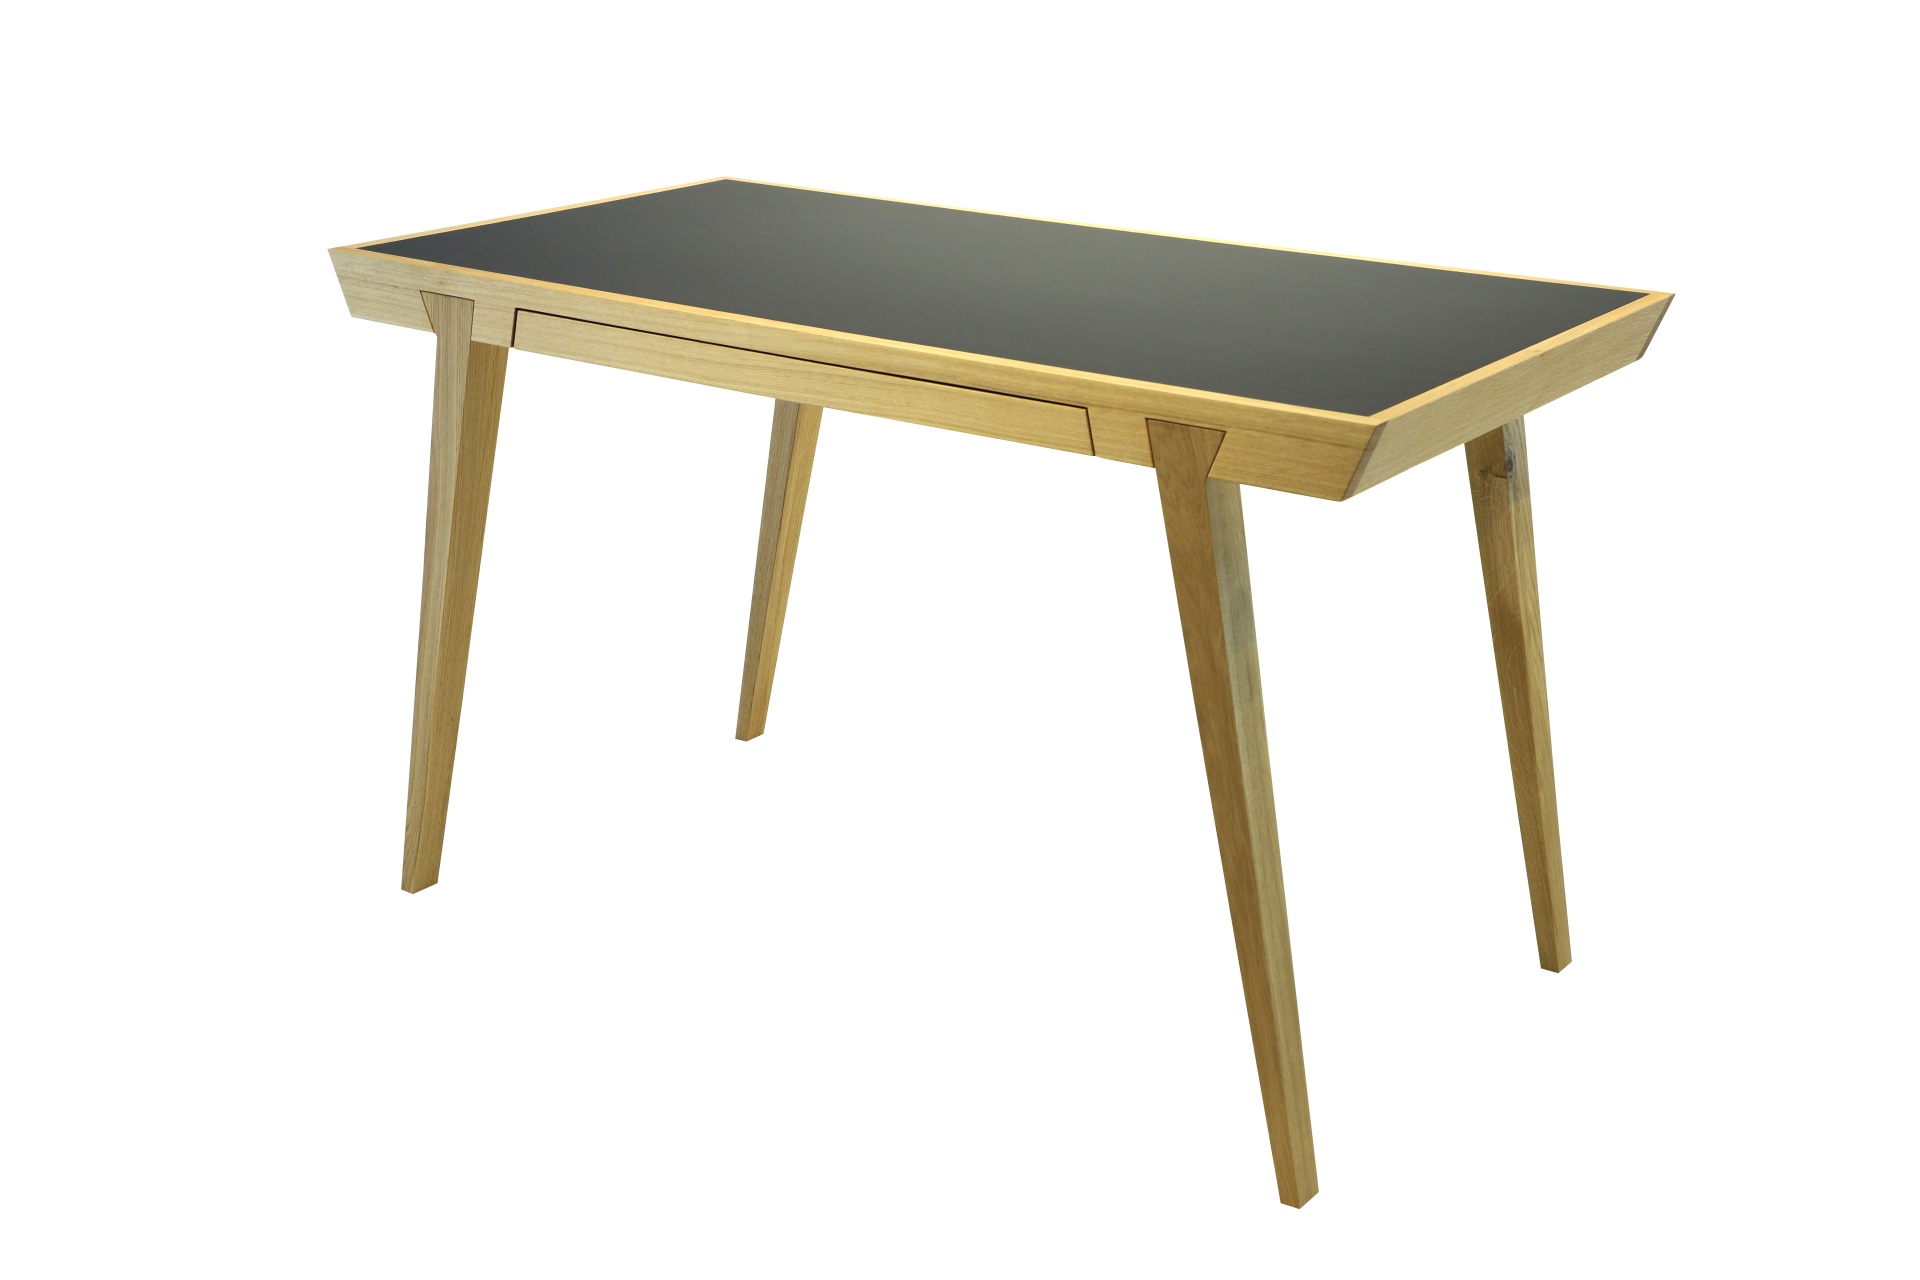 Der Schreibtisch Desk überzeugt mit seinem besonderen Design. Der Tisch wurde aus massiver Eiche hergestellt, welche geölt wurde was dem Tisch seine Farbe verleiht. Der Tisch verfügt über eine Schublade. Designet wurde er von der Marke Jan Kurtz.